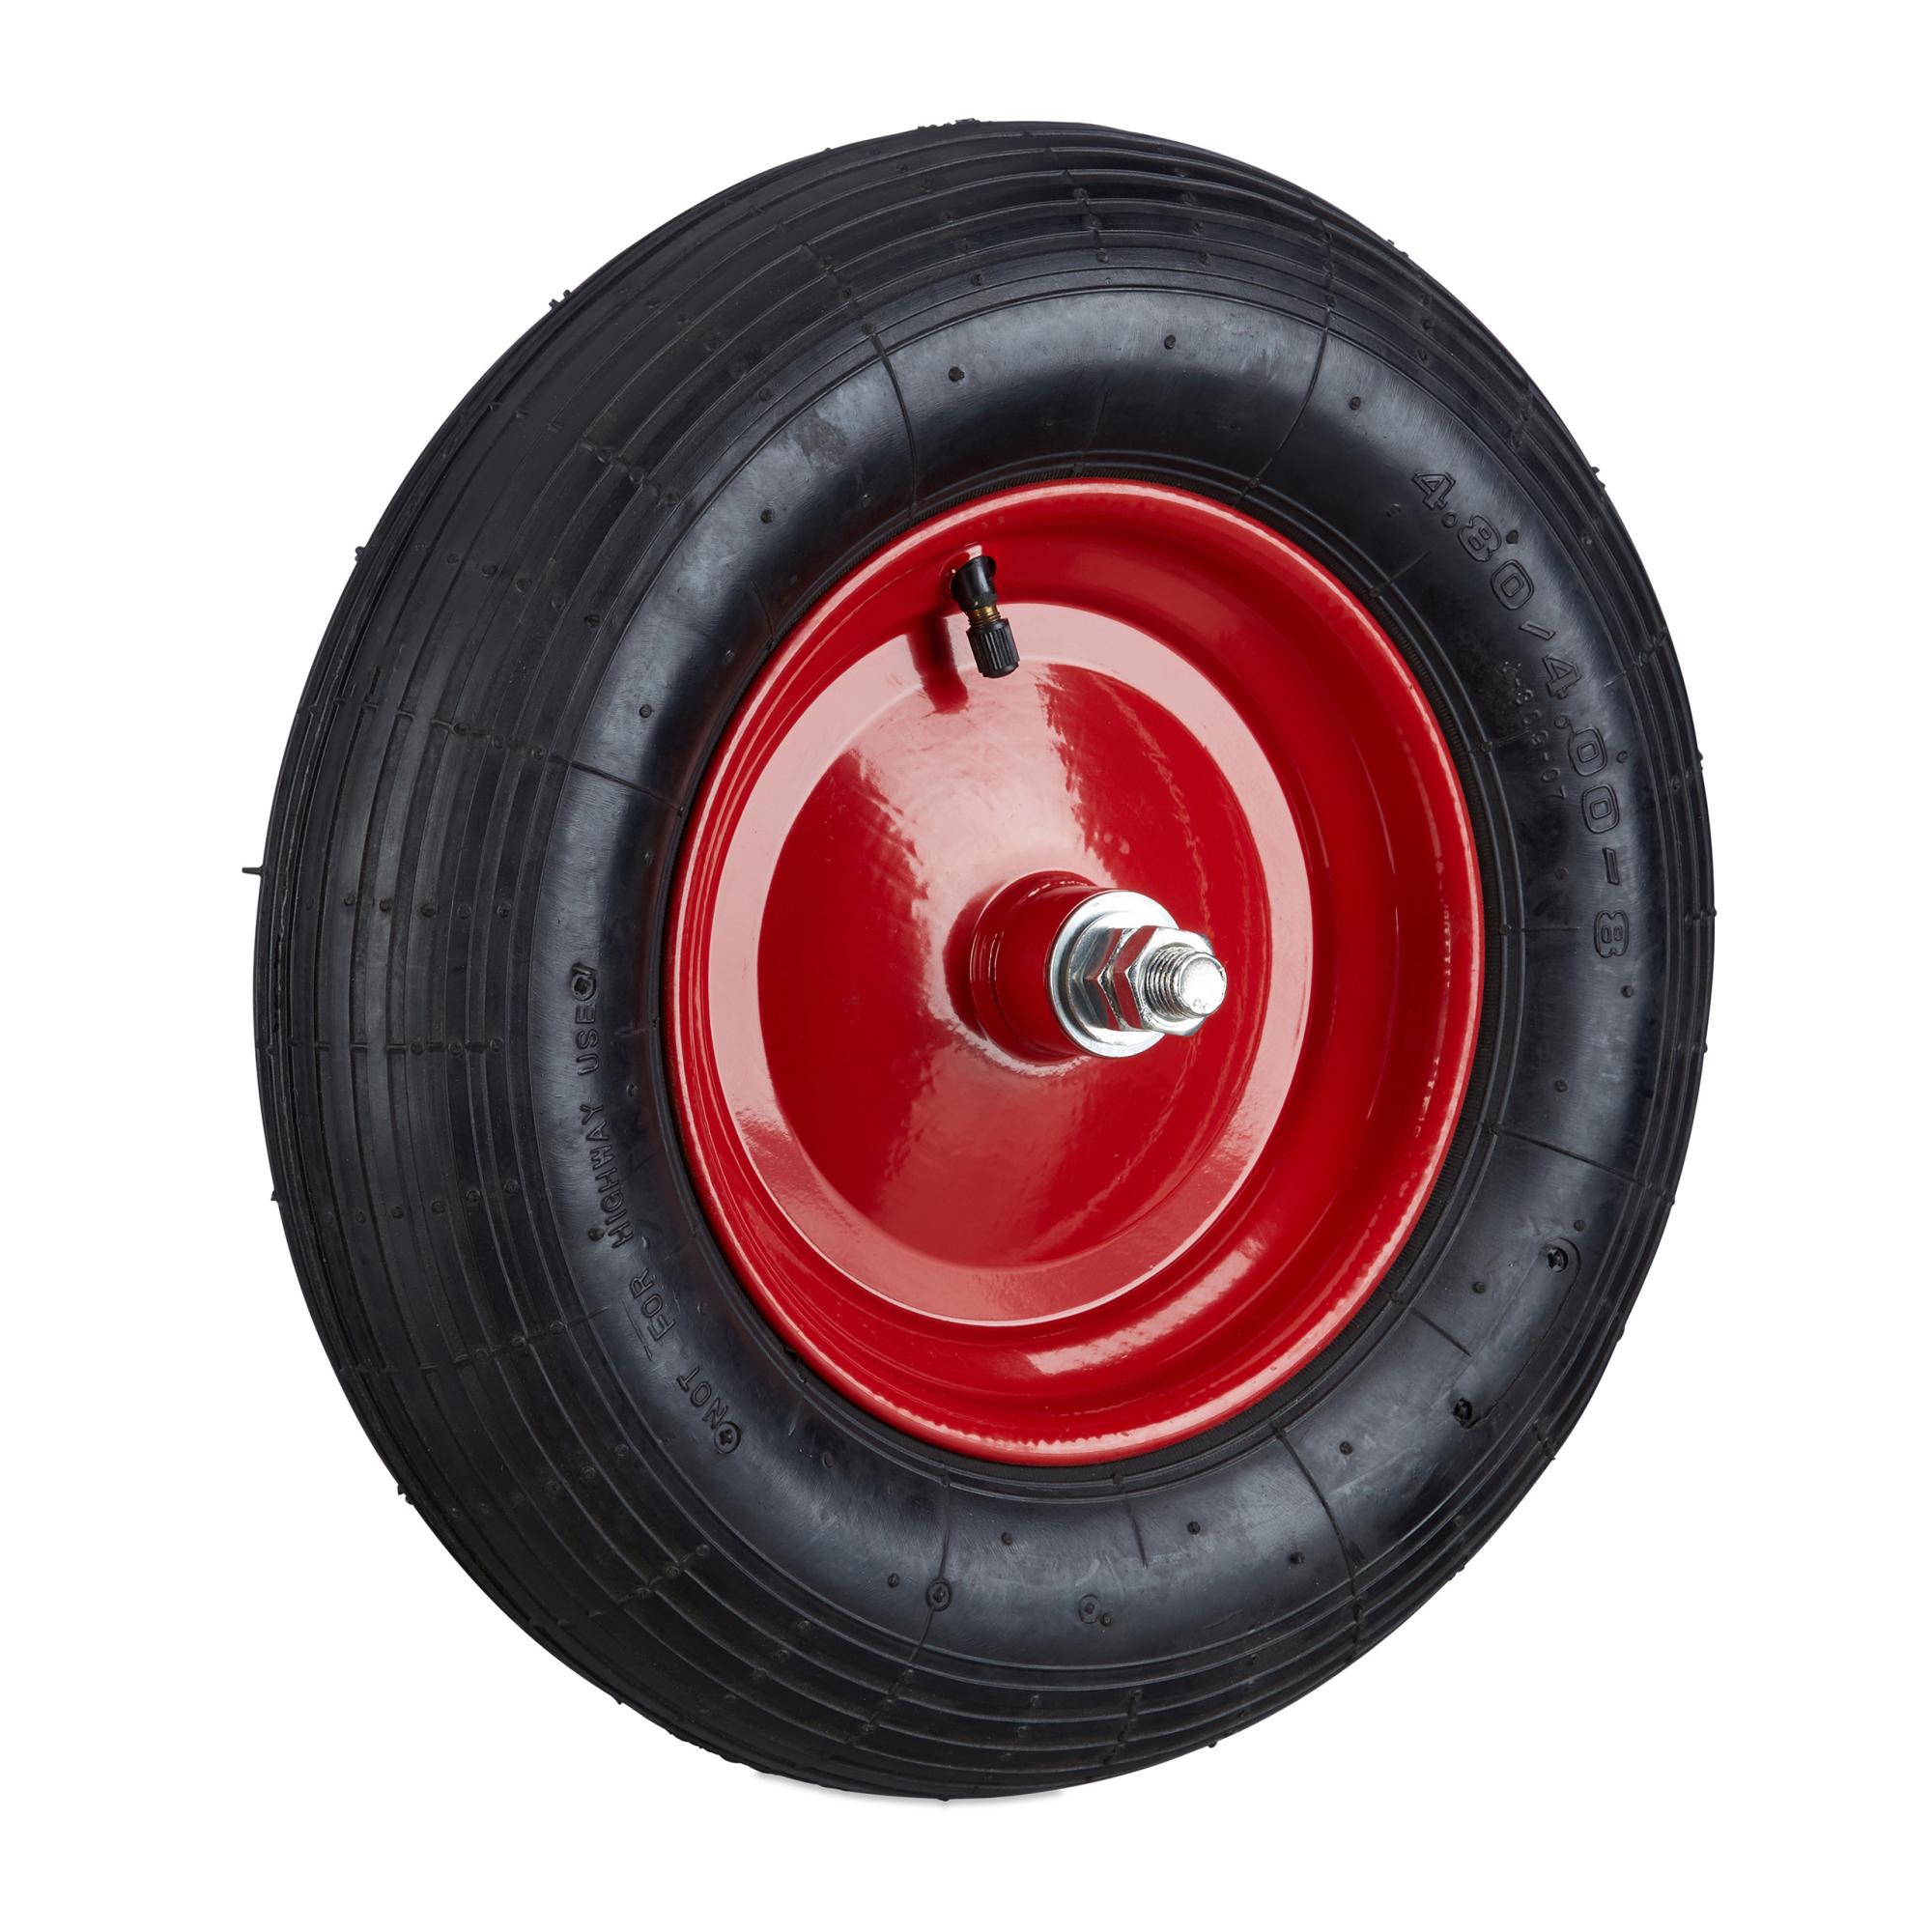 pneus de Rechange 3,00-4 pour Diable Noir 260 x 85 mm profilé de roulettes Relaxdays Lot de 2 pneus de brouette avec Tuyau 200 kg 